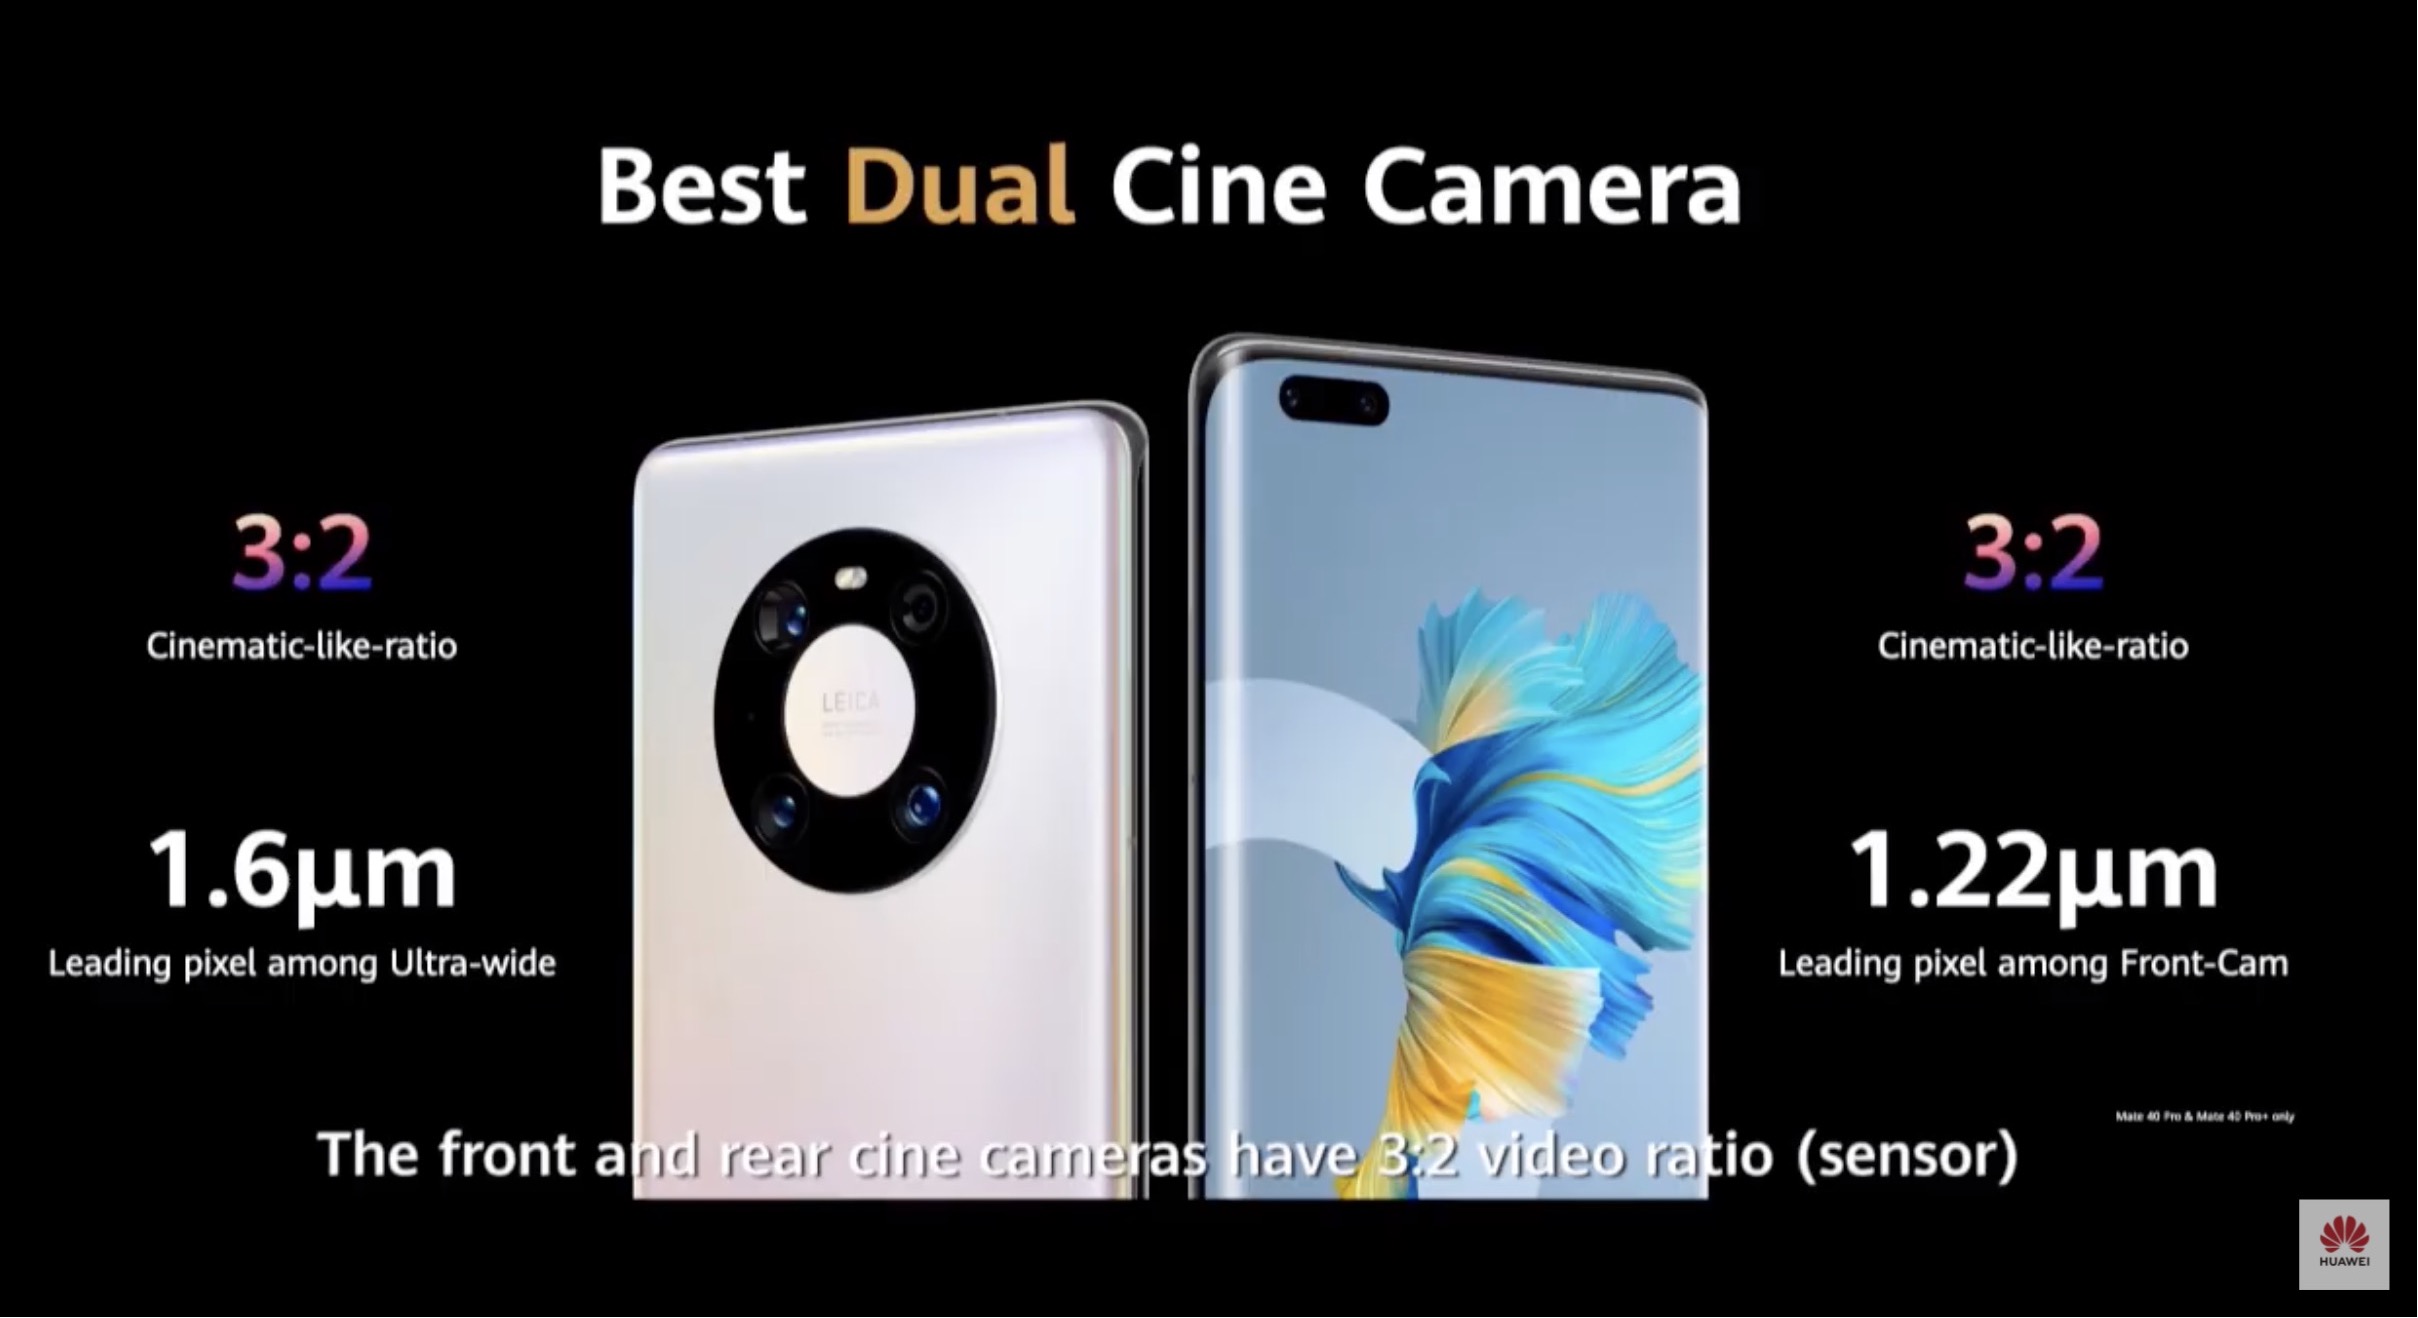 Huawei Mate 40 e Mate 40 Pro ufficiali: super fotocamera, grandi schermi curvi e ricarica rapida